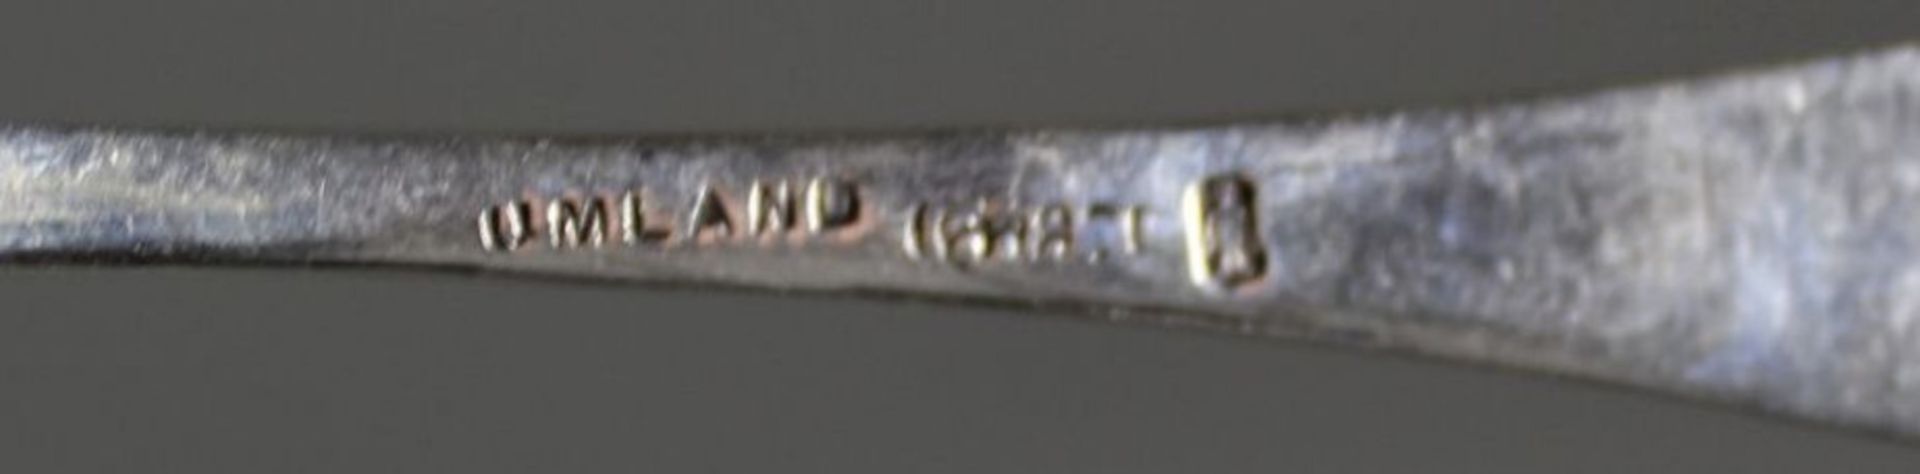 4x Teelöffel, 800er Silber, Meister Umland, 20er Jahre, zus. 63gr., L-13cm. - Bild 3 aus 3